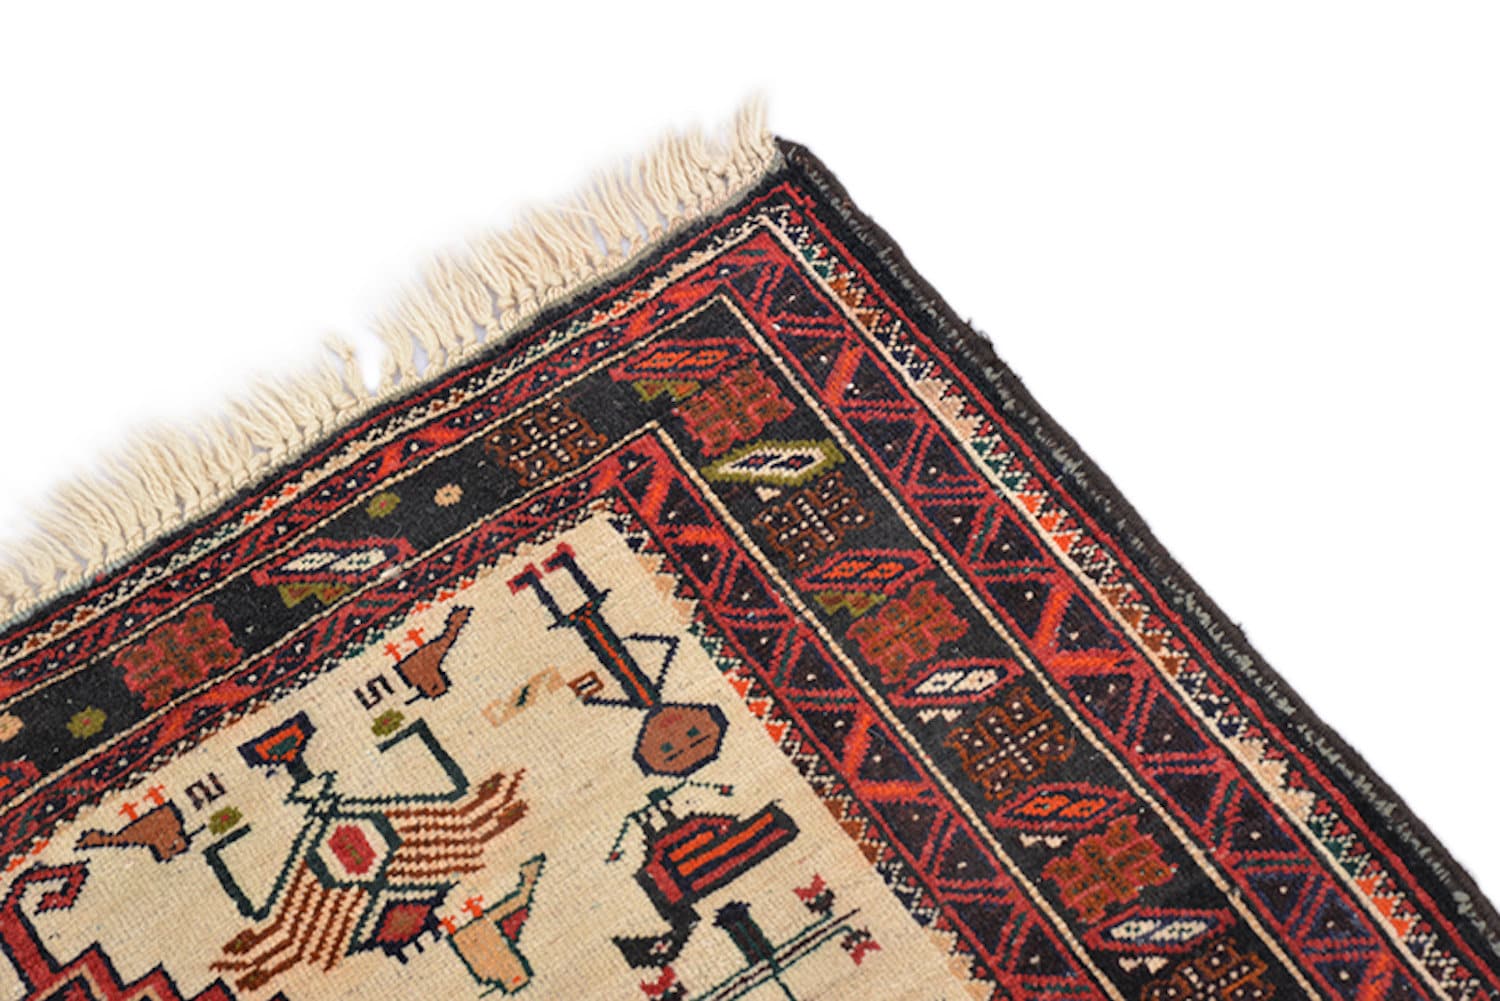 8 Feet x 3.5 Feet Runner Rug | Vintage Afghan Rug |Red Bright Rug | Wool Handwoven Runner | Persian Tribal Geometric | Kitchen Hallway Rug